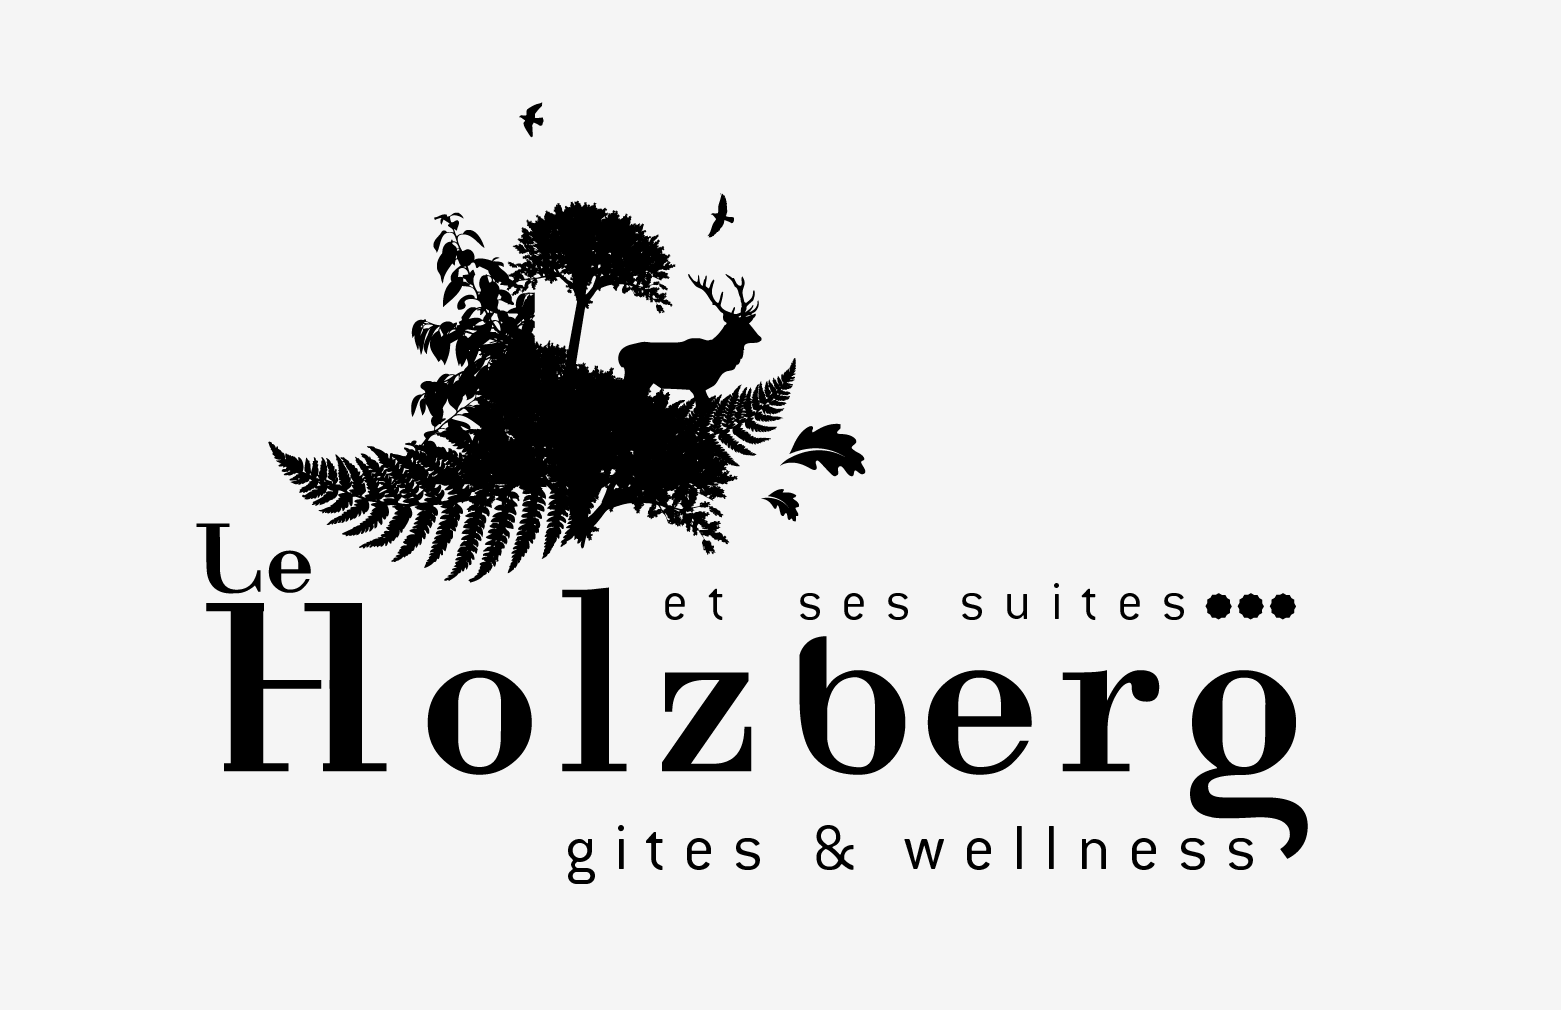 Le Holzberg et ses Suites